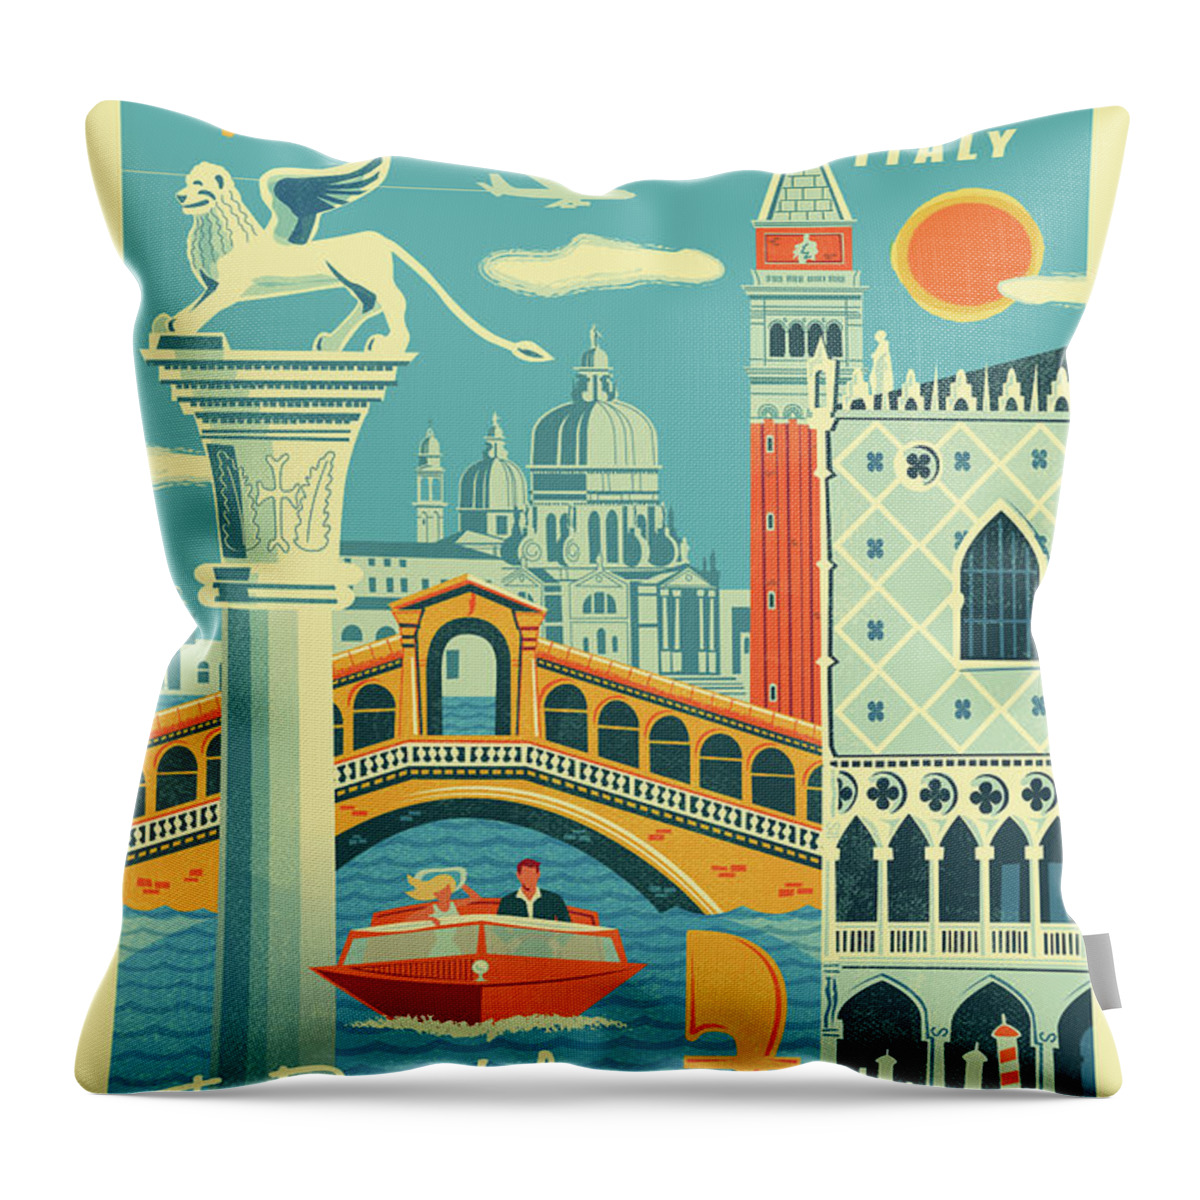 Pop Art Throw Pillow featuring the digital art Venice Poster - Retro Travel by Jim Zahniser